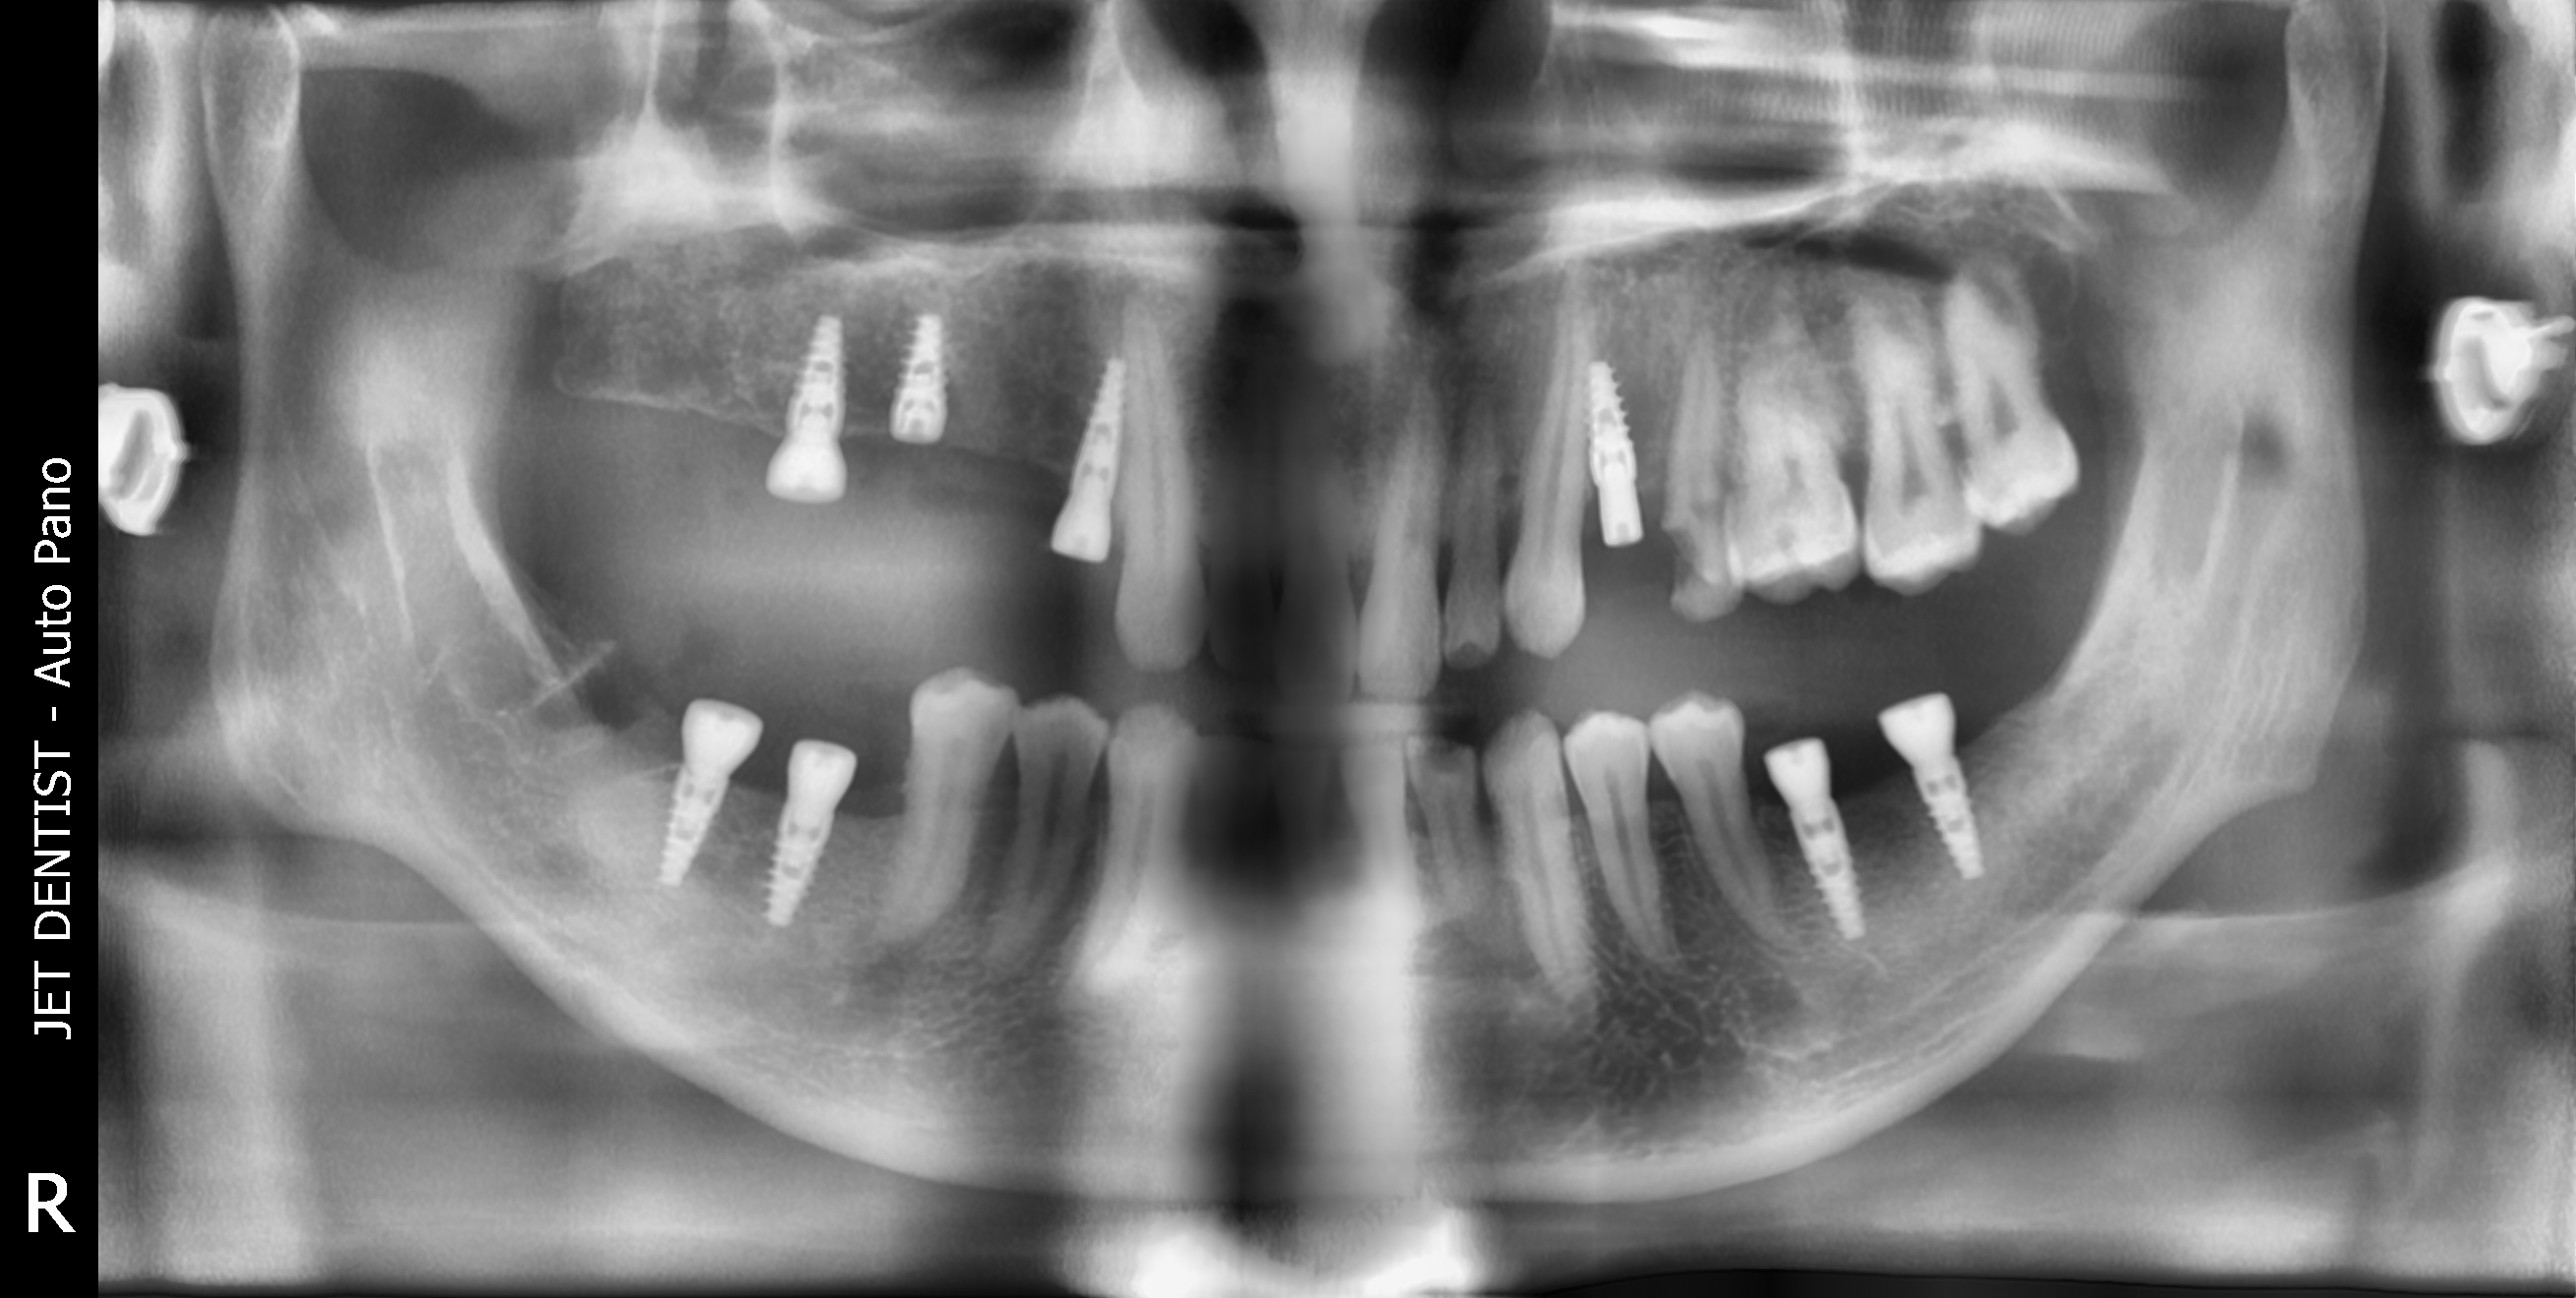 Việc mất đến 8 răng gây ra nhiều bất tiện cho nam khách hàng trong vấn đề sinh hoạt và cả trong giao tiếp